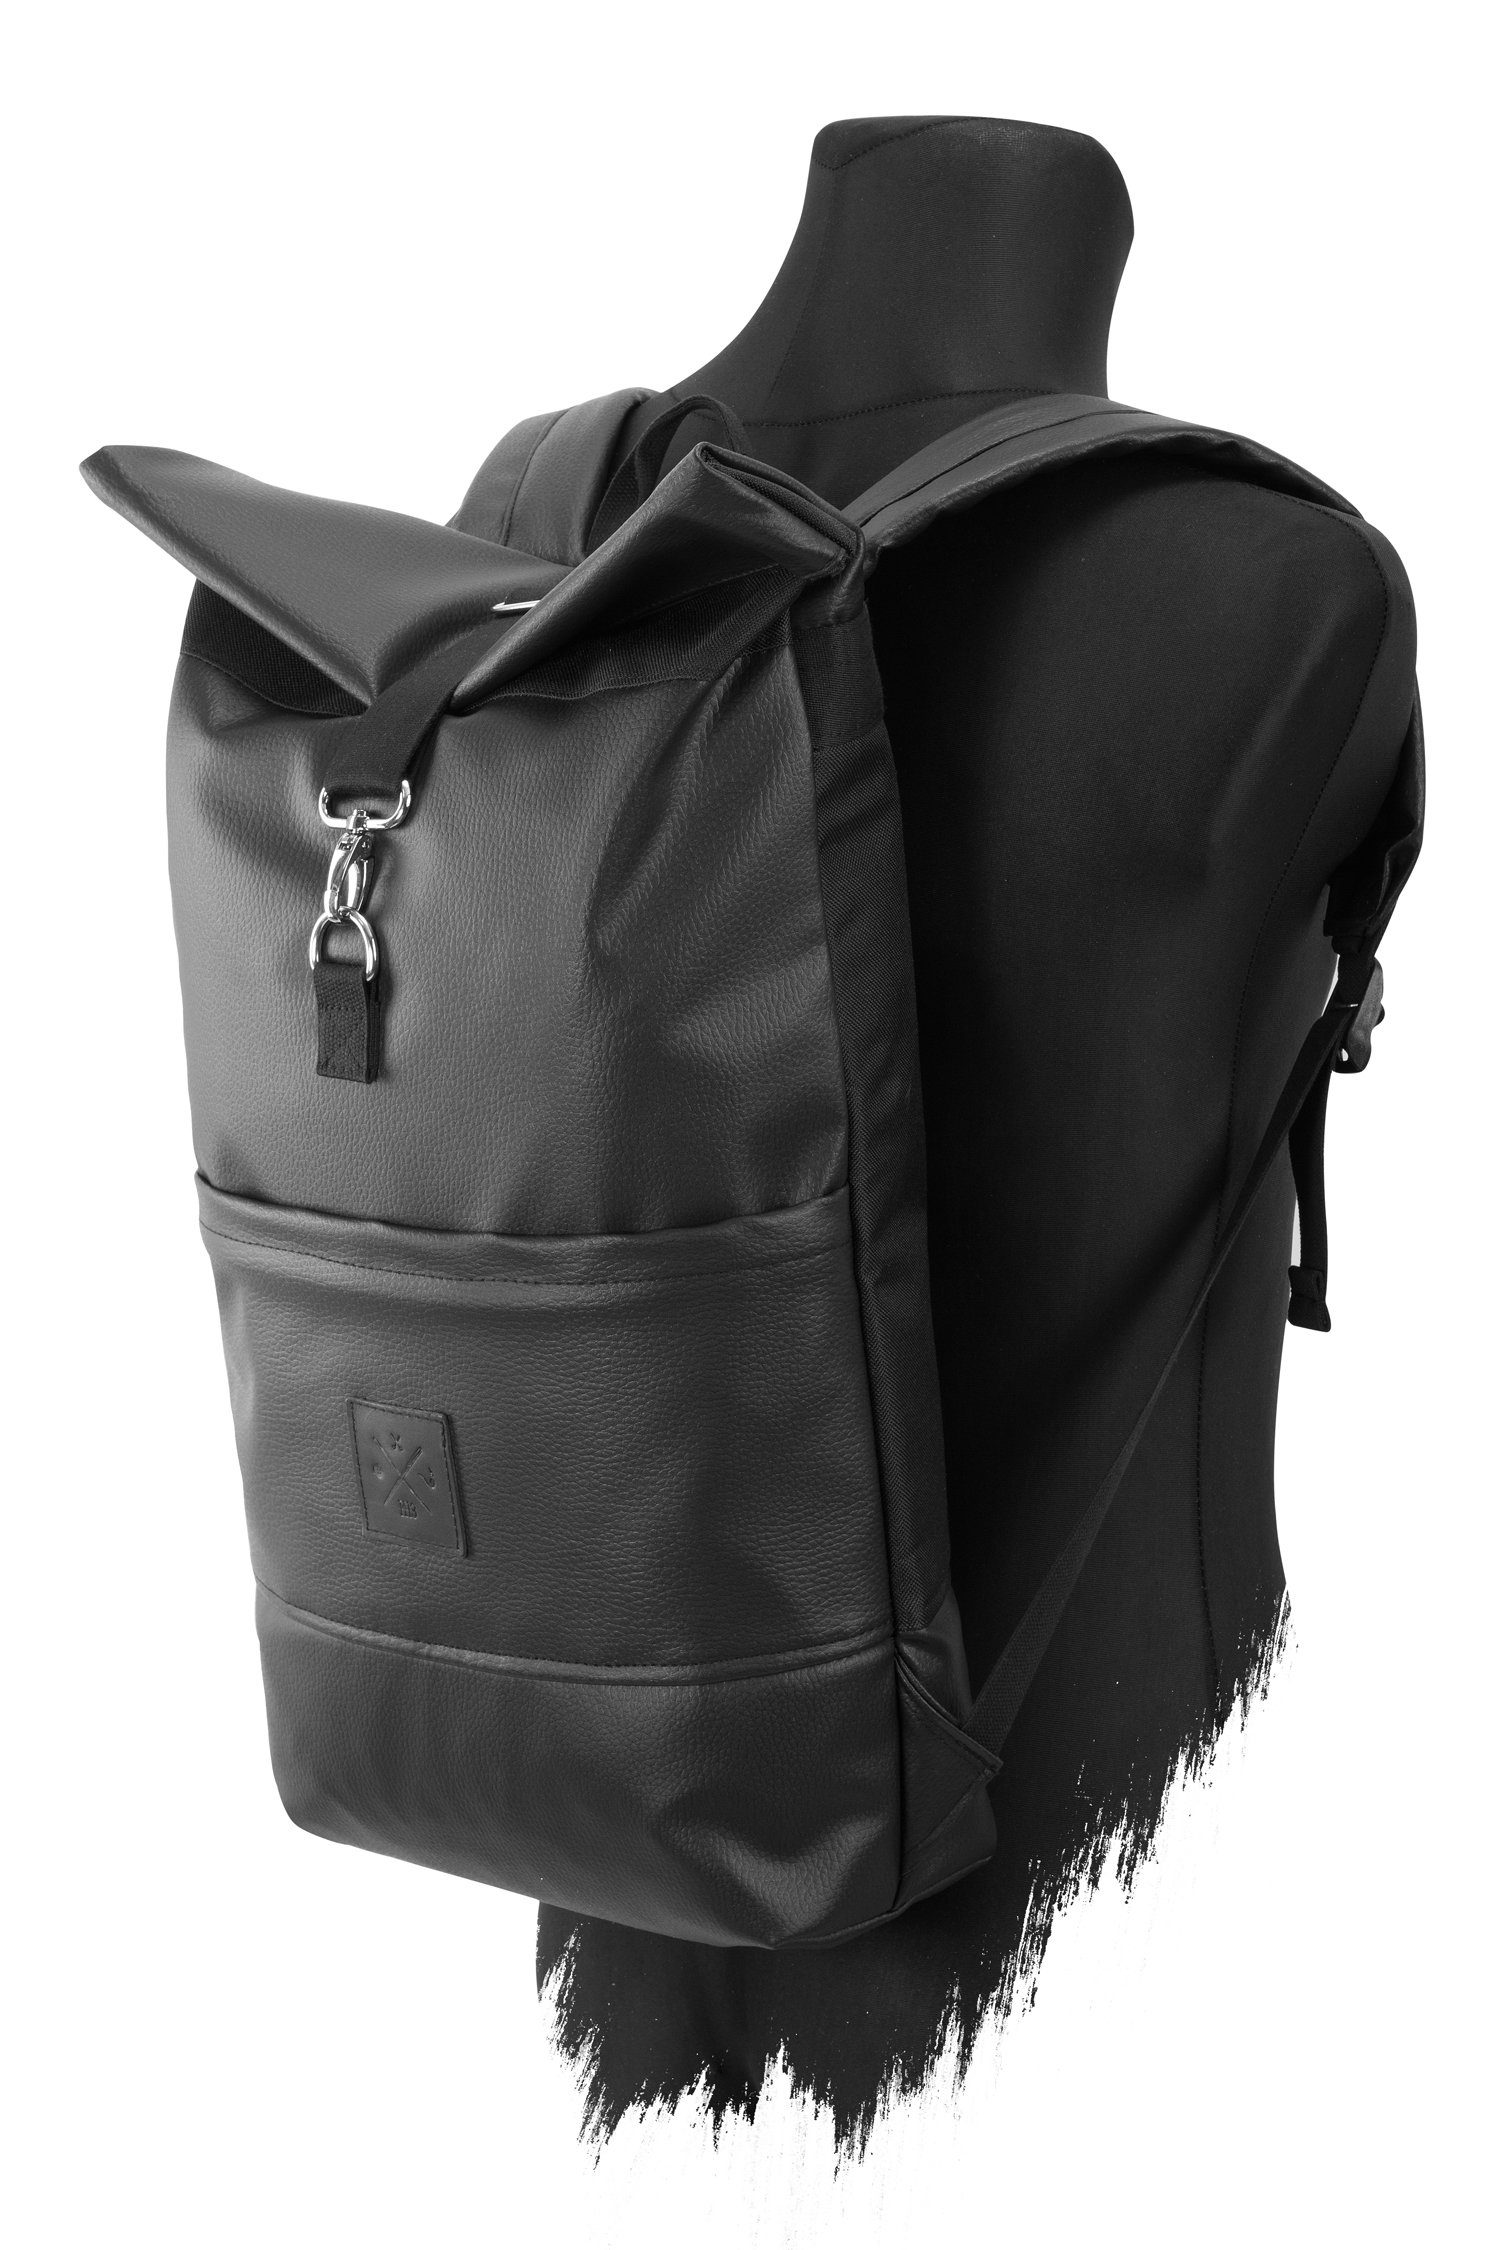 Tagesrucksack verstellbare Manufaktur13 Vegan Roll-Top Black Backpack Leather Gurte Rucksack mit Rollverschluss, - wasserdicht/wasserabweisend, Out